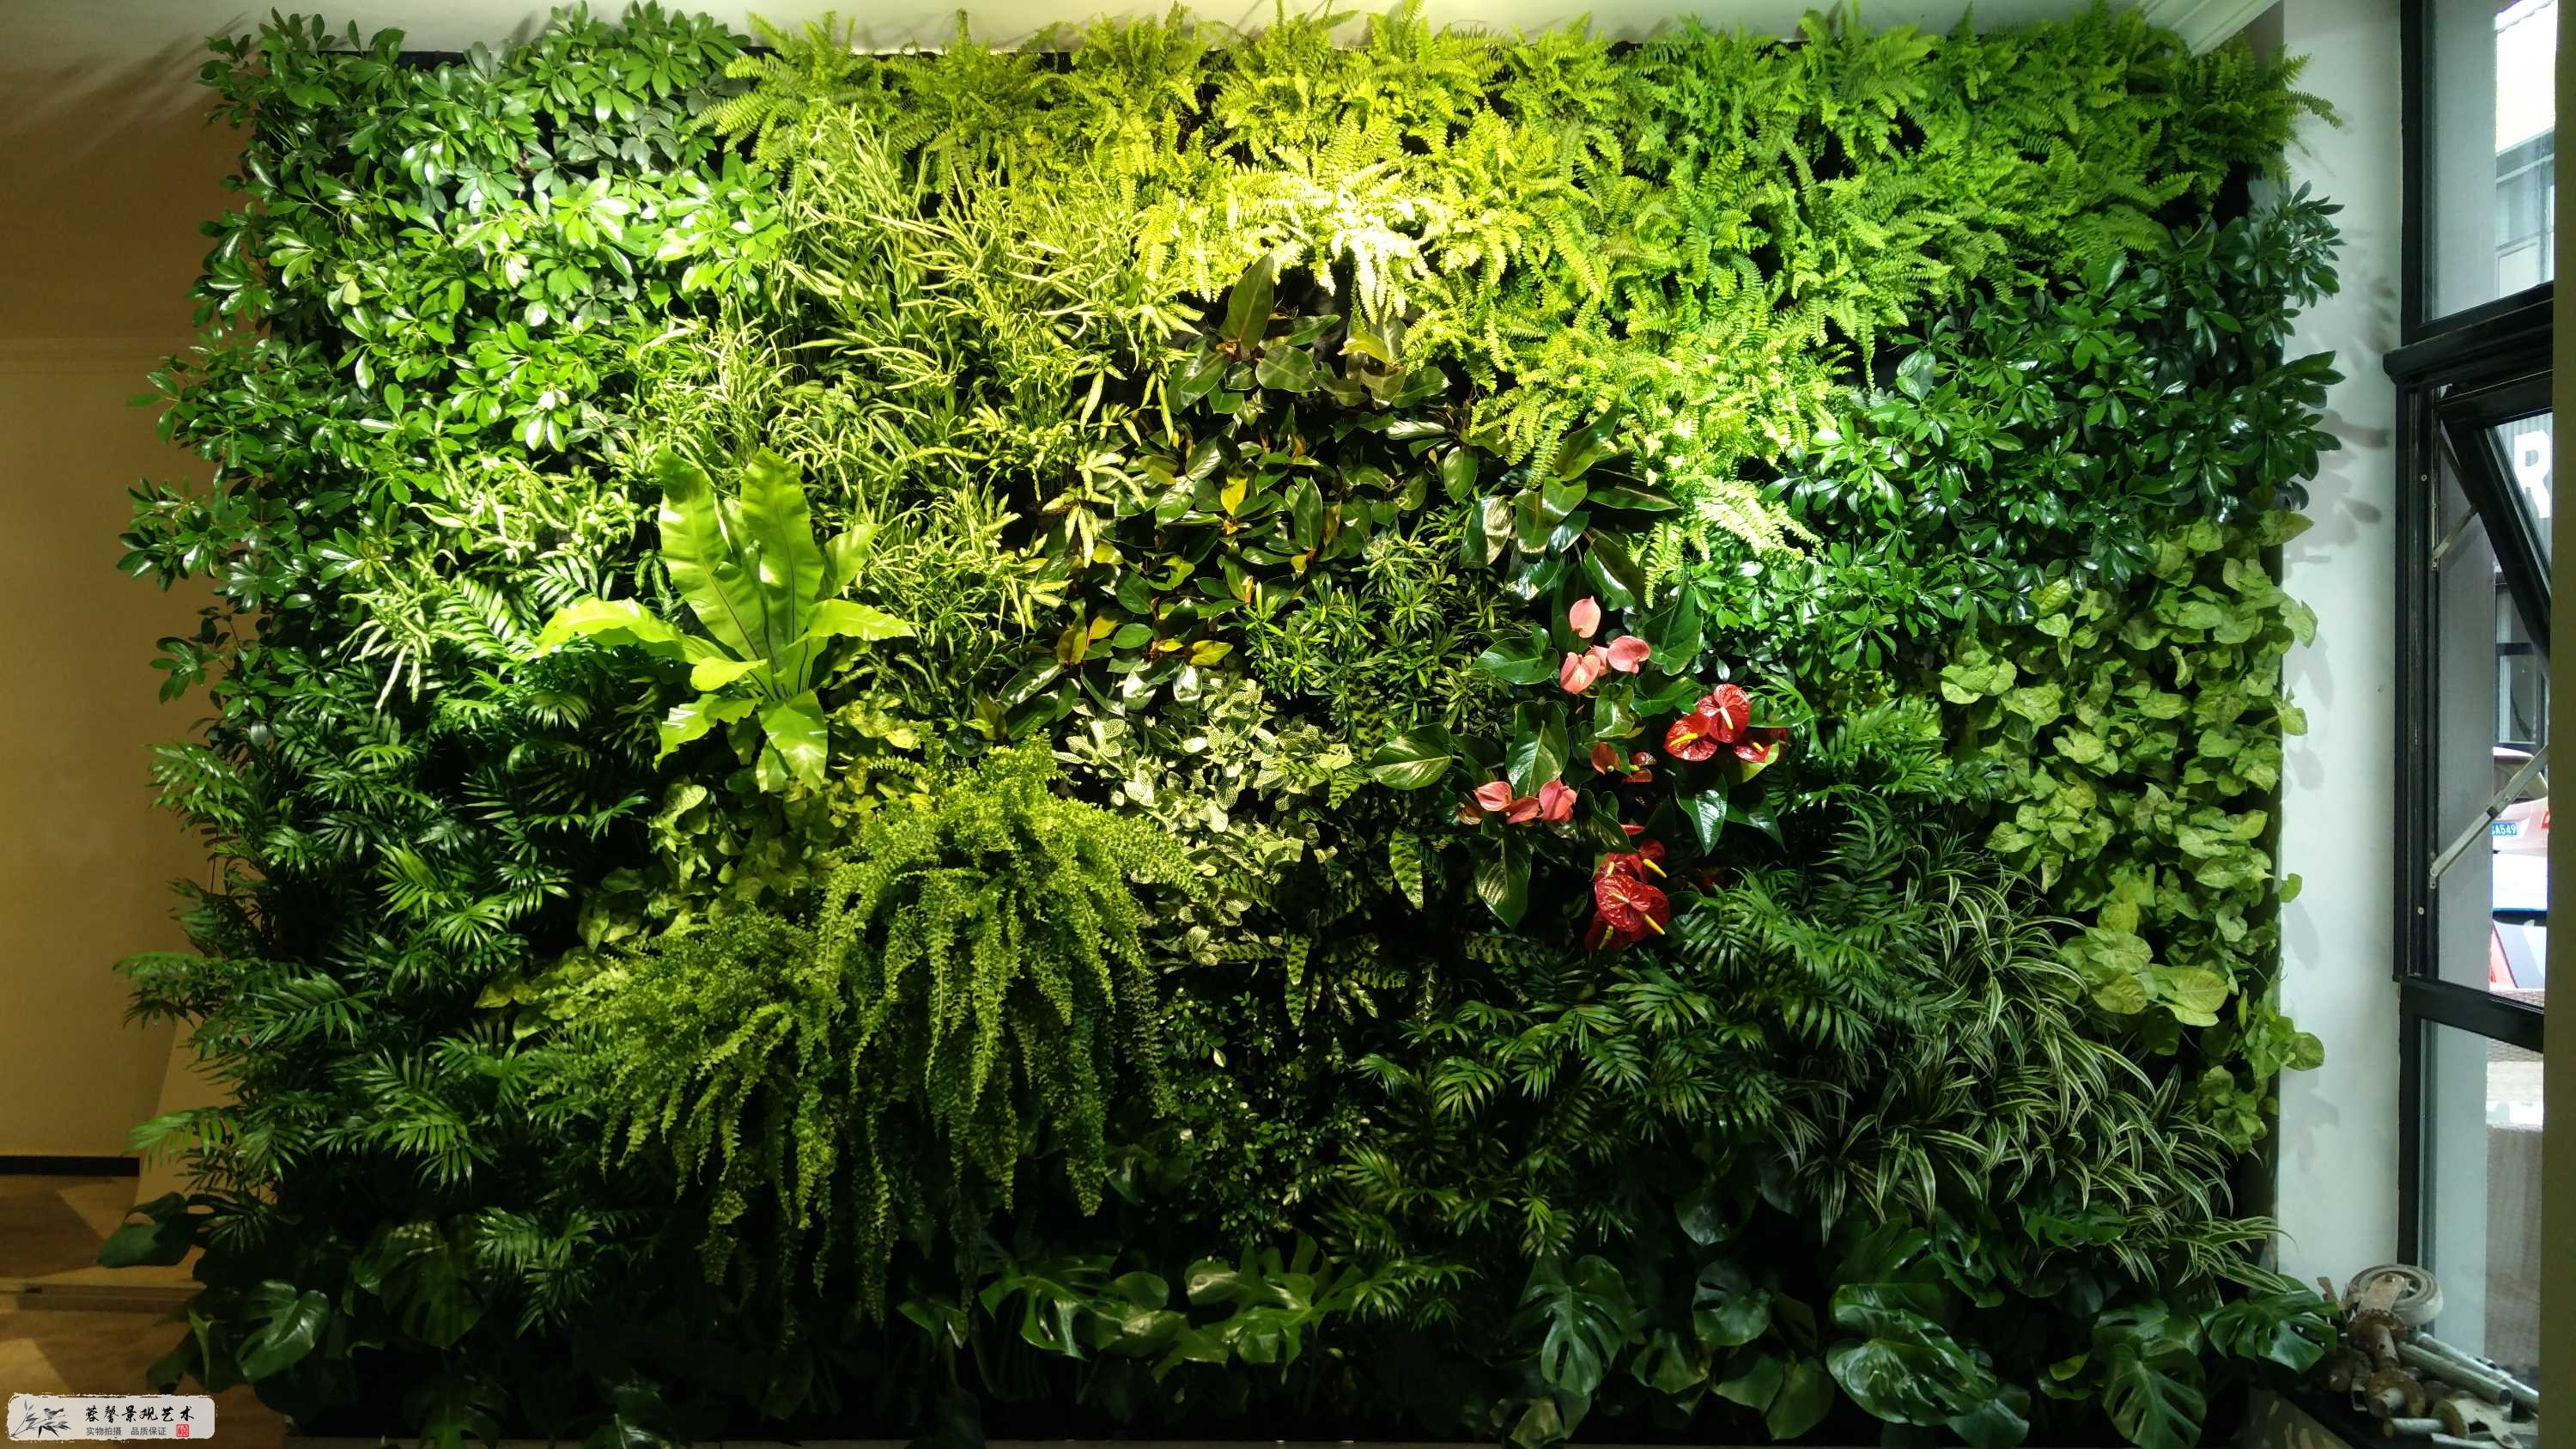 室内植物墙植物